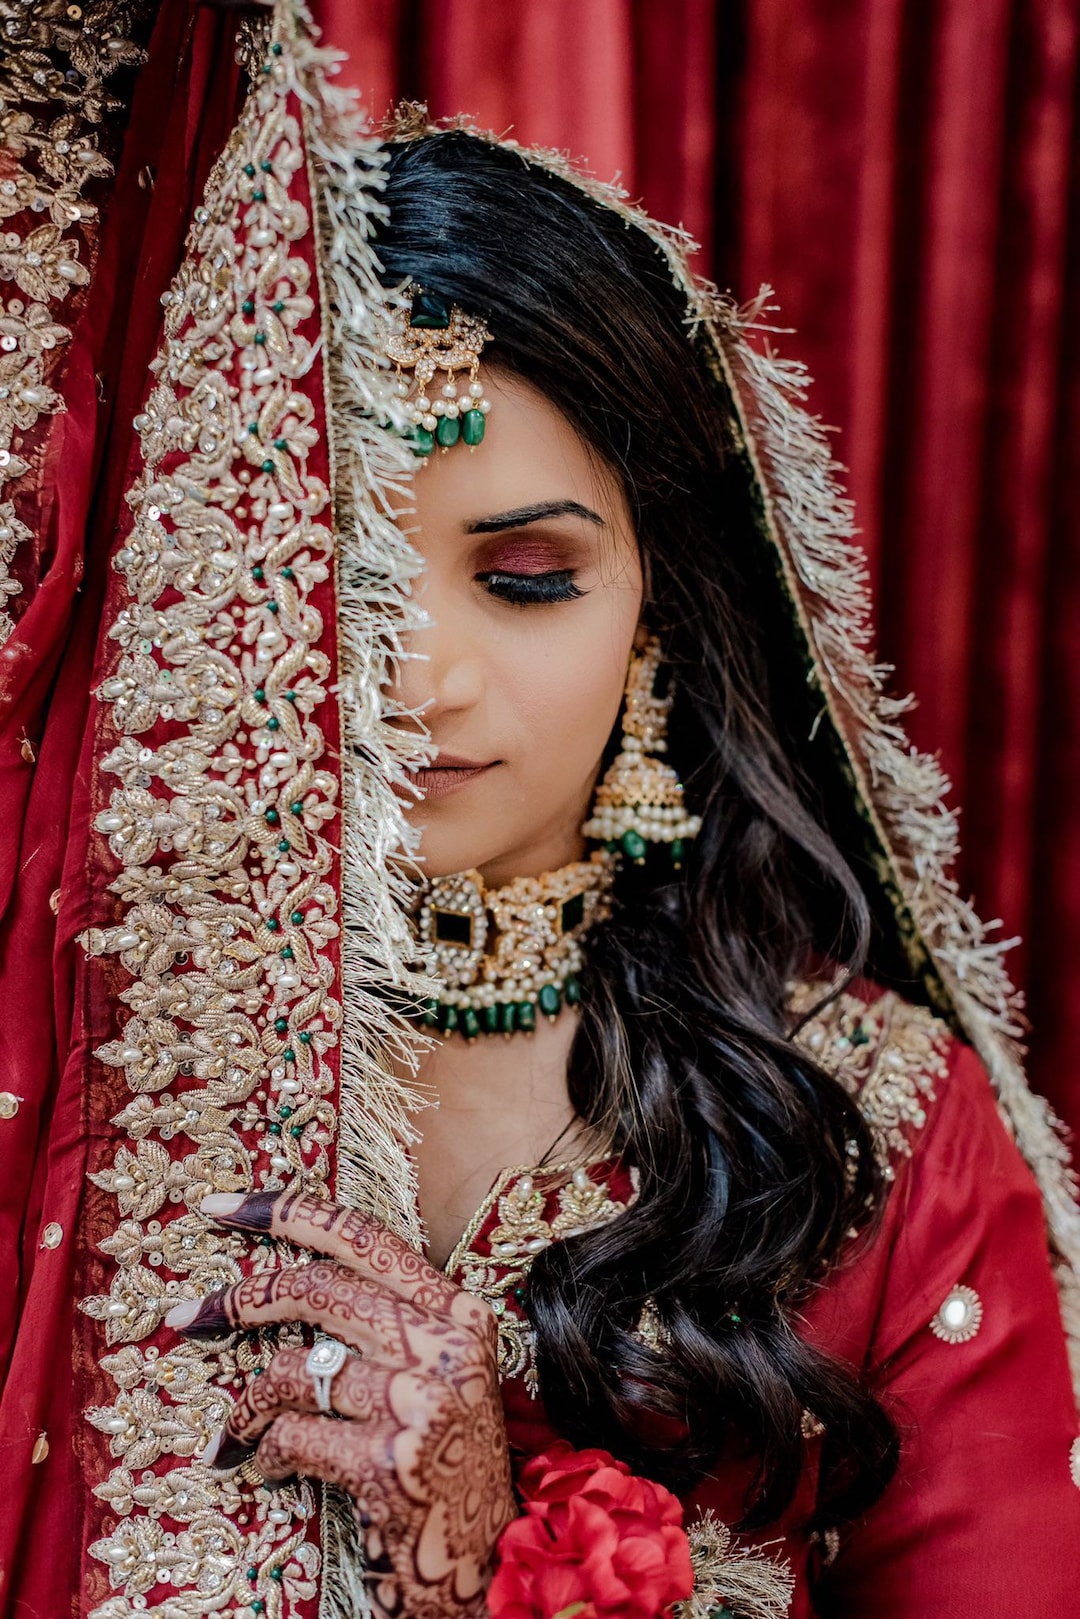 Kerala Muslim Bride | Kerala muslim bride, Muslim bride, Hindu wedding